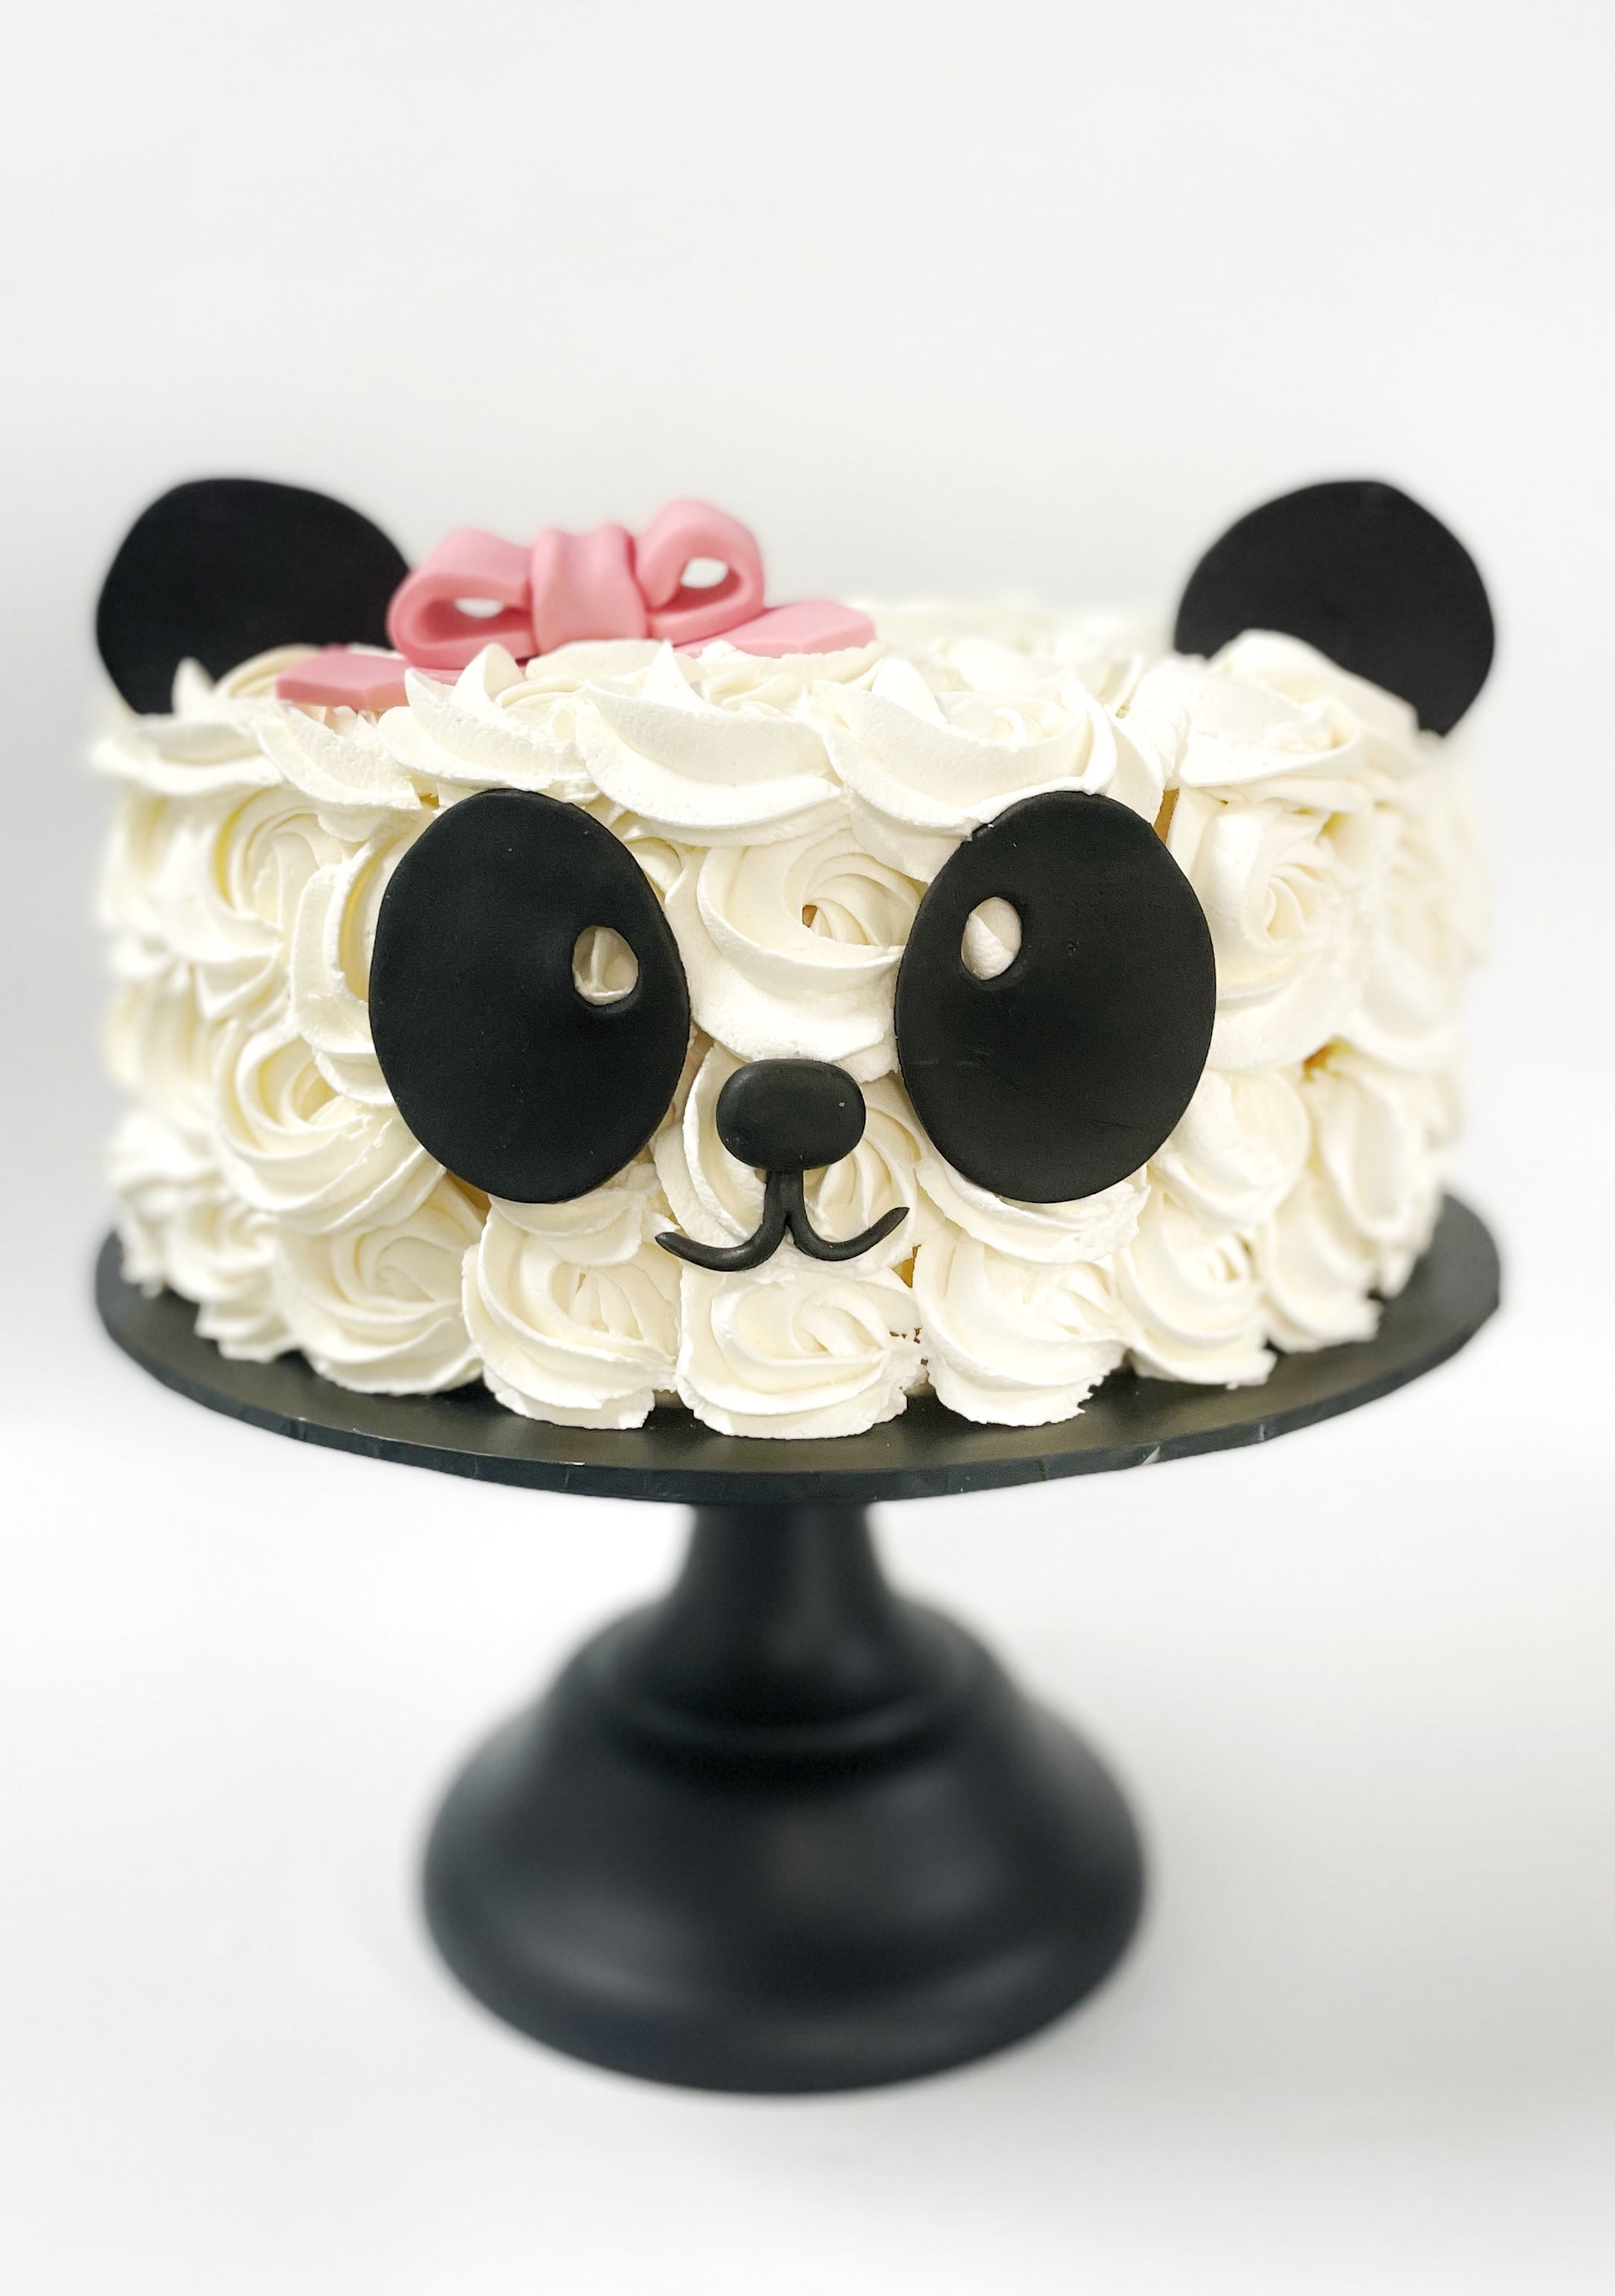 Crafty Cakes | Exeter | UK - Panda Bears & Bamboo Shoots Cake